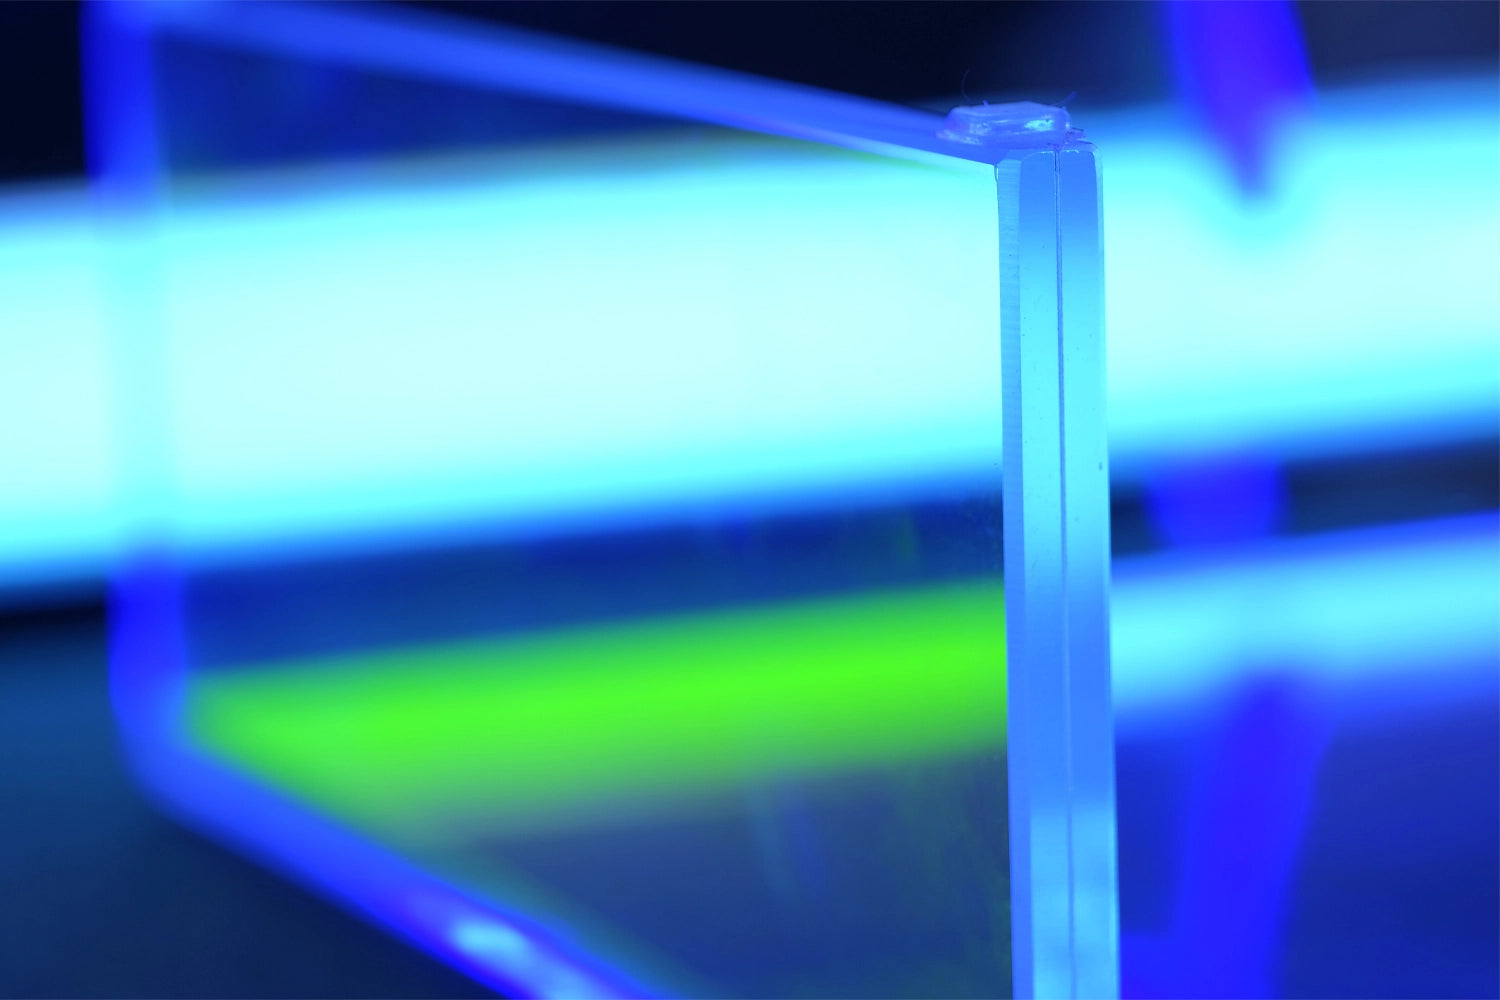 Dettaglio dello spessore di una lastra di vetro illuminata da led blu